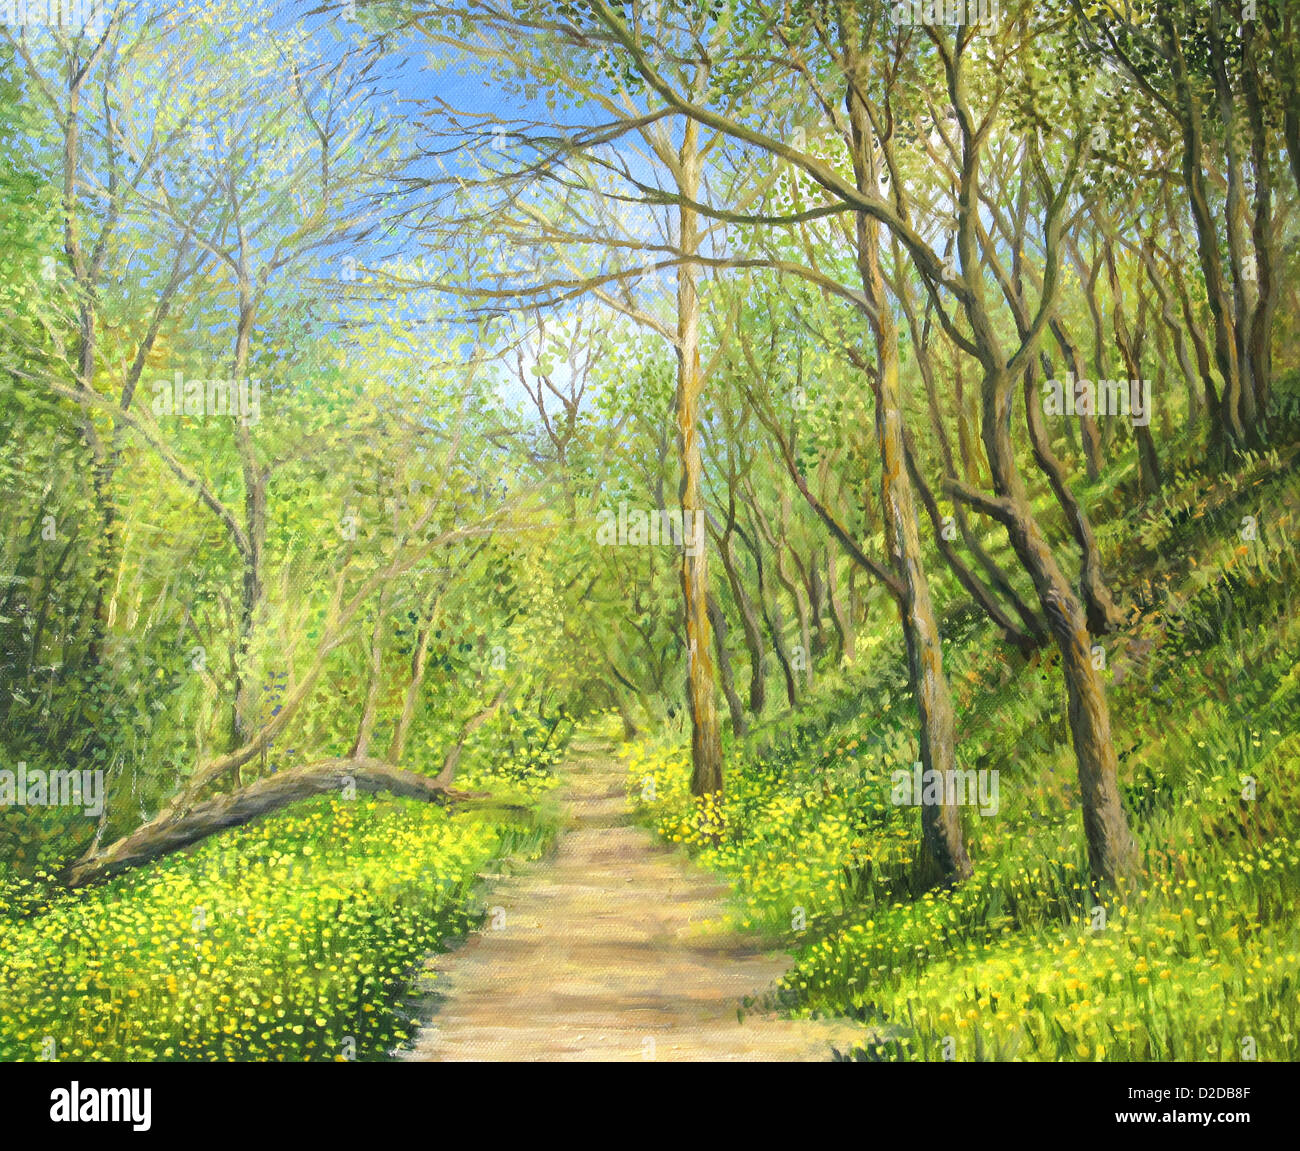 Une peinture à l'huile sur toile d'un paysage de saison avec une forêt vert vif et jaune fleurs au printemps et un sentier pédestre. Banque D'Images